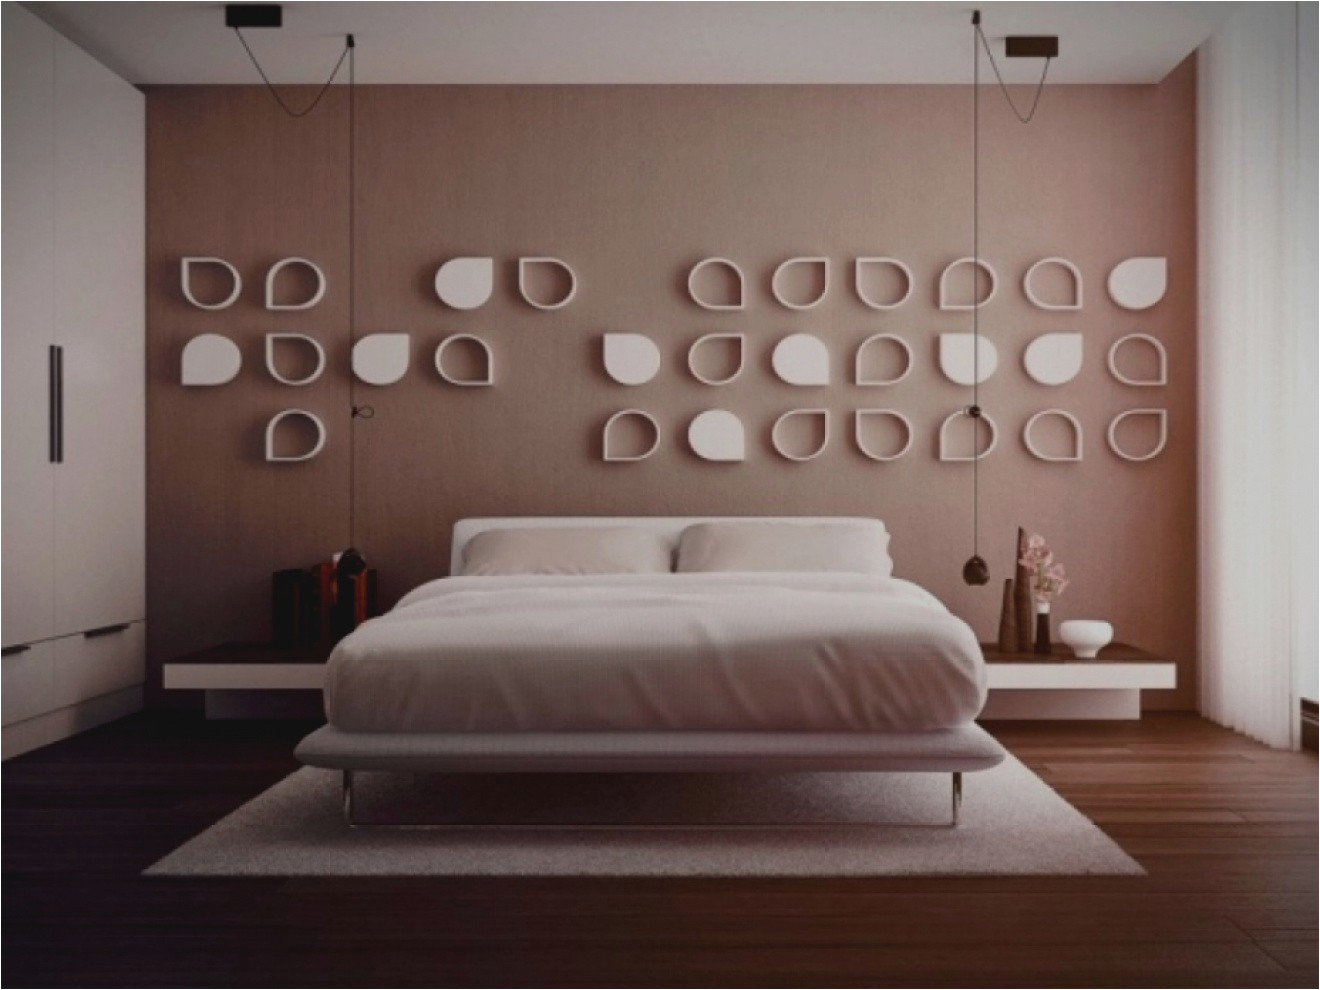 erstaunlich schlafzimmer deko wand wunderbar ideen geraumiges moderne dekoration